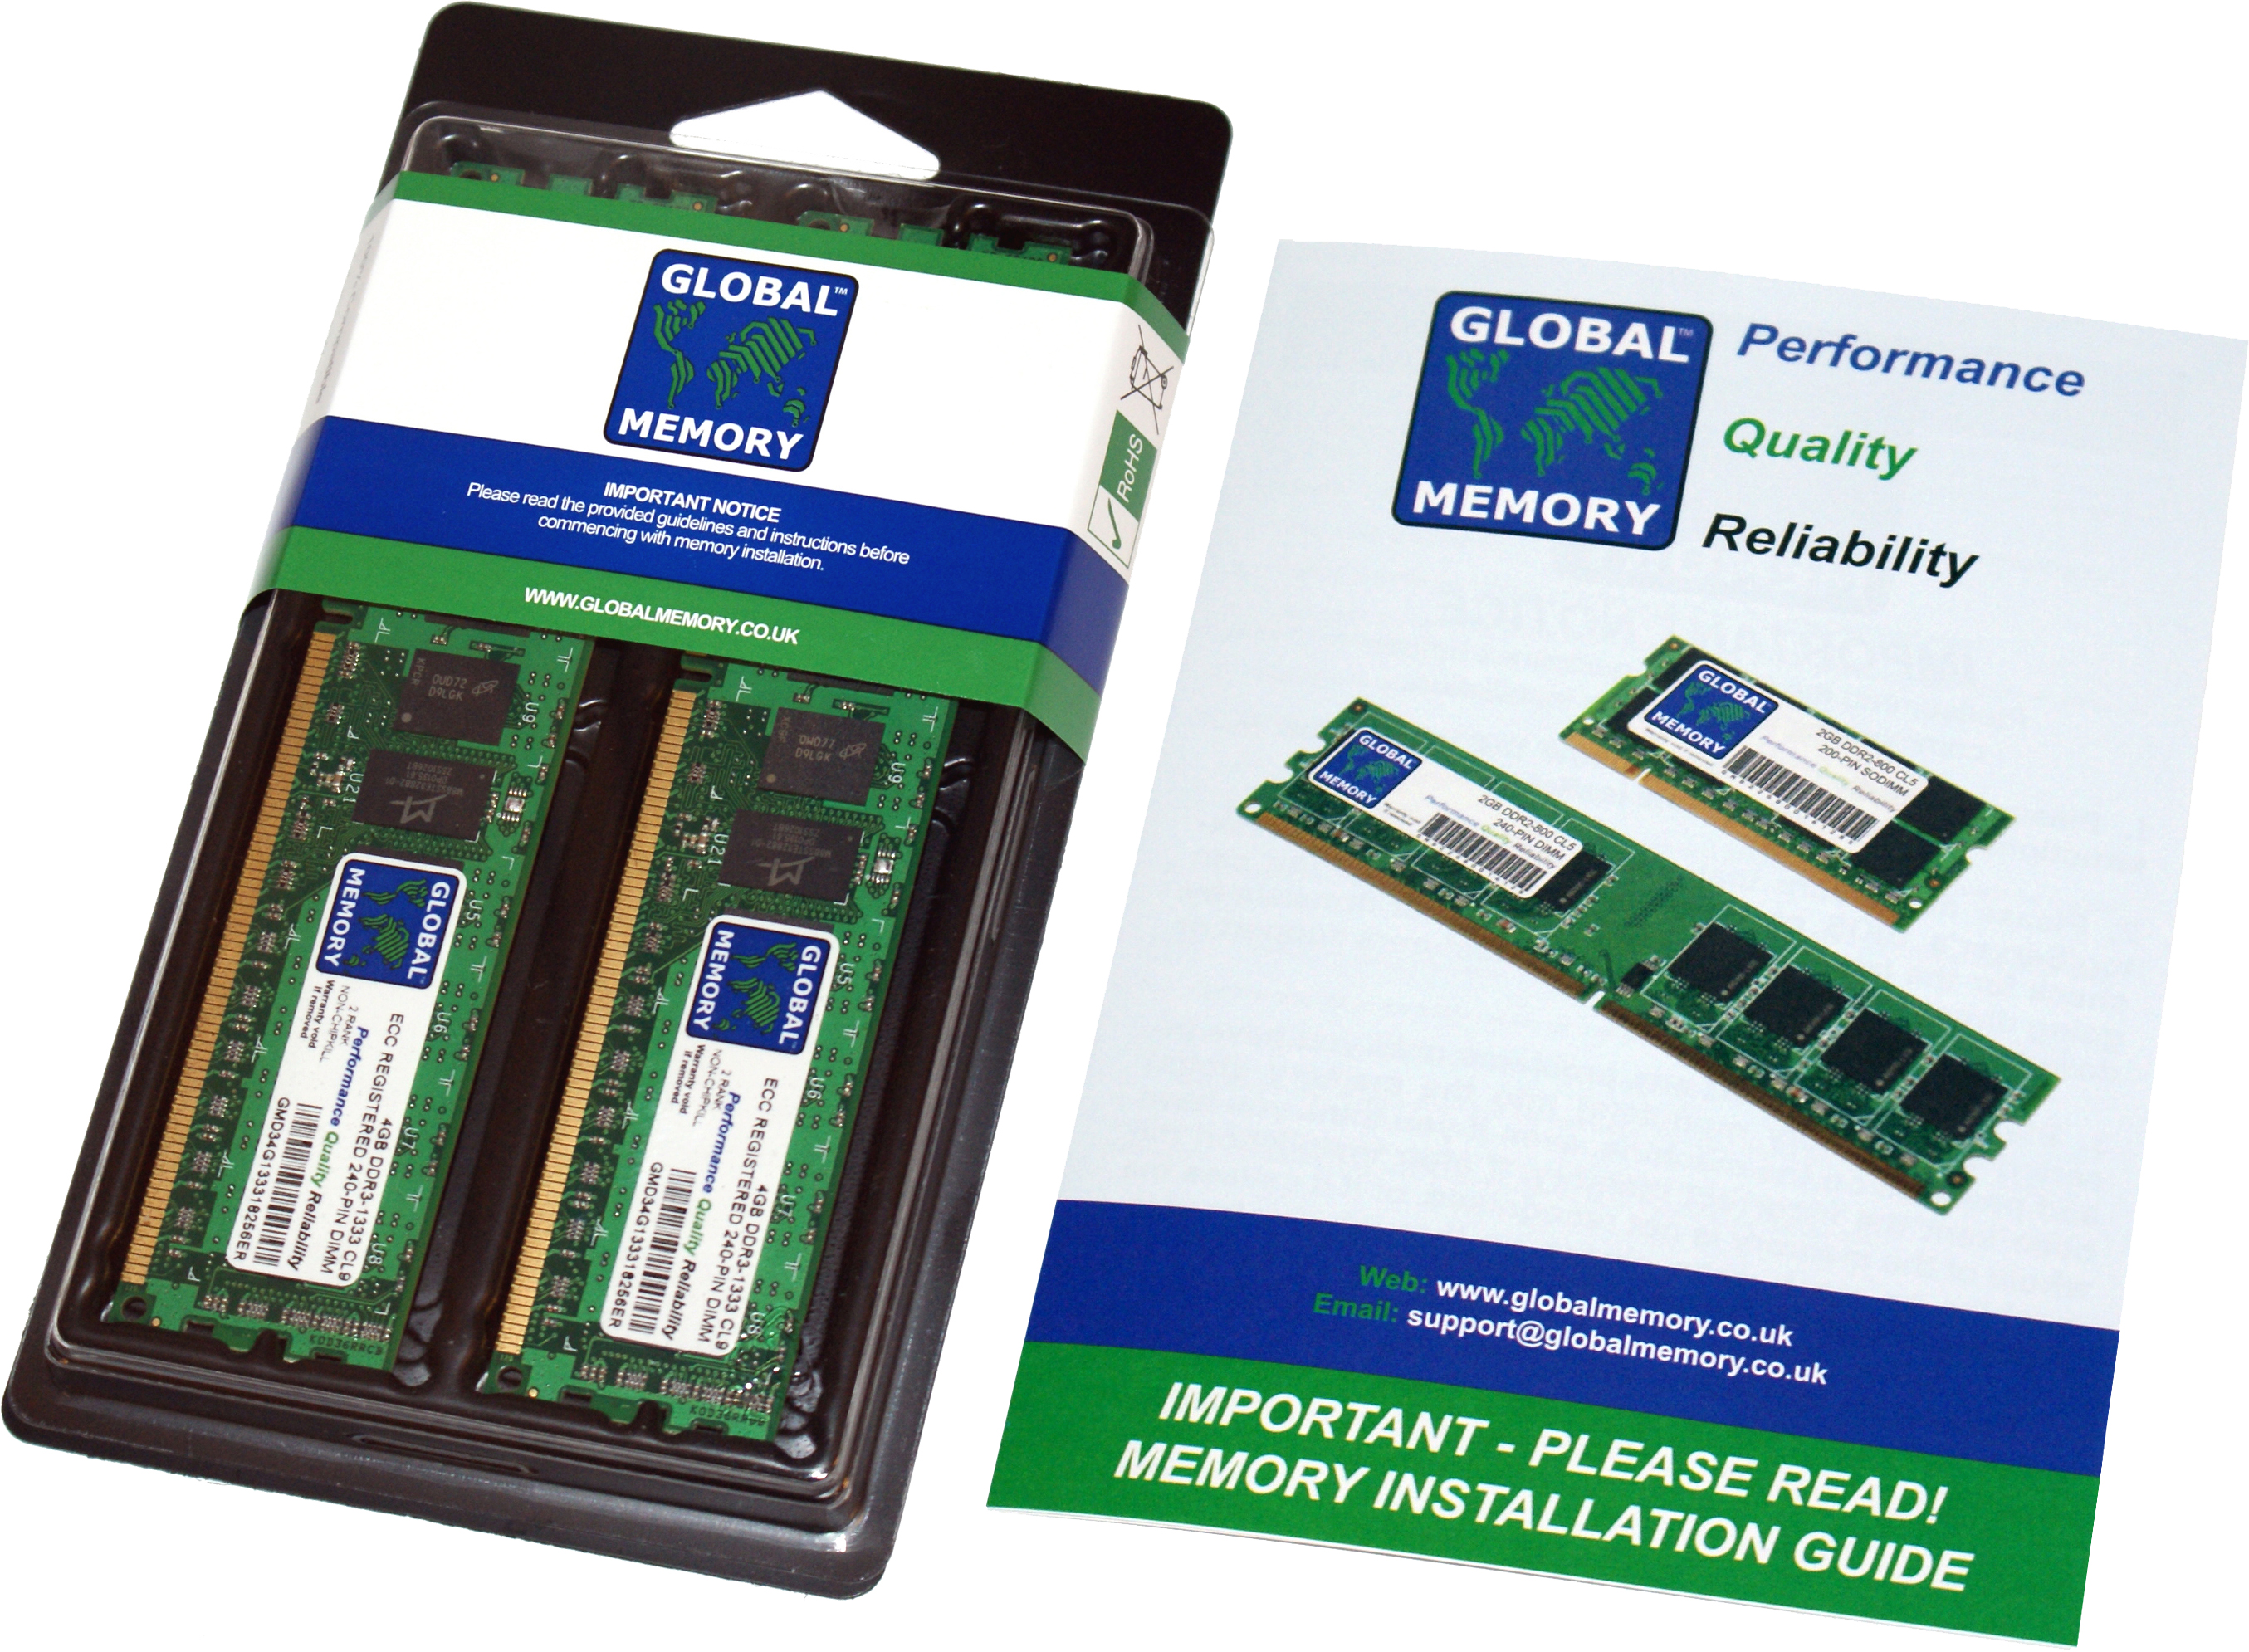 16GB (2 x 8GB) DDR4 2933MHz PC4-23400 288-PIN ECC REGISTERED DIMM (RDIMM) MEMORY RAM KIT FOR HEWLETT-PACKARD SERVERS/WORKSTATIONS (2 RANK KIT CHIPKILL)